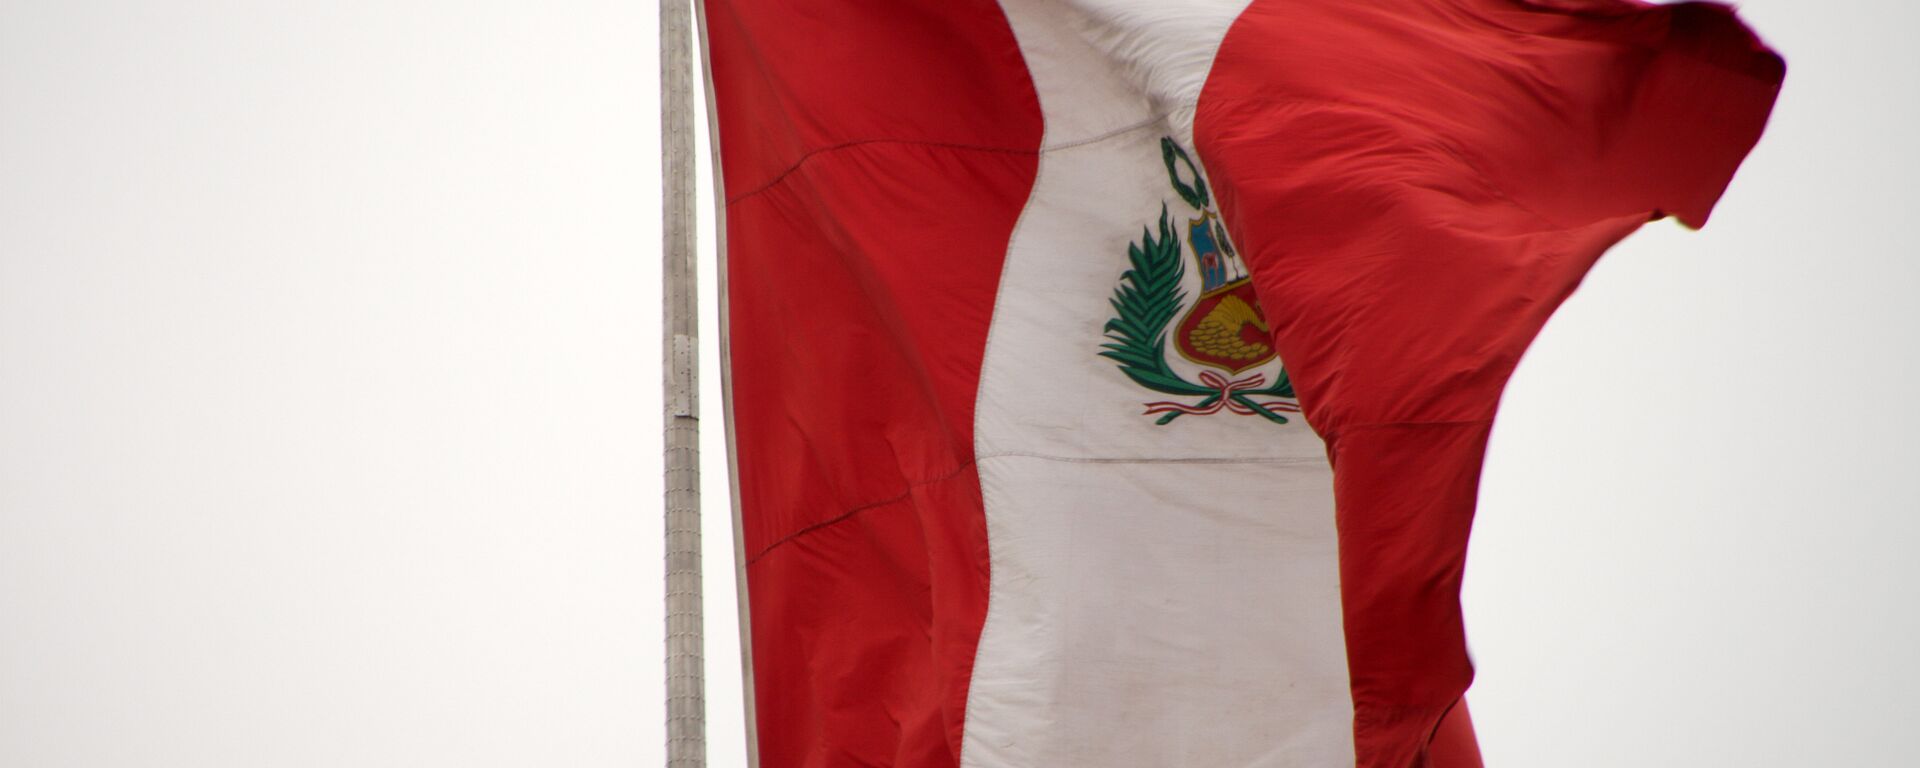 La bandera de Perú - Sputnik Mundo, 1920, 18.10.2021